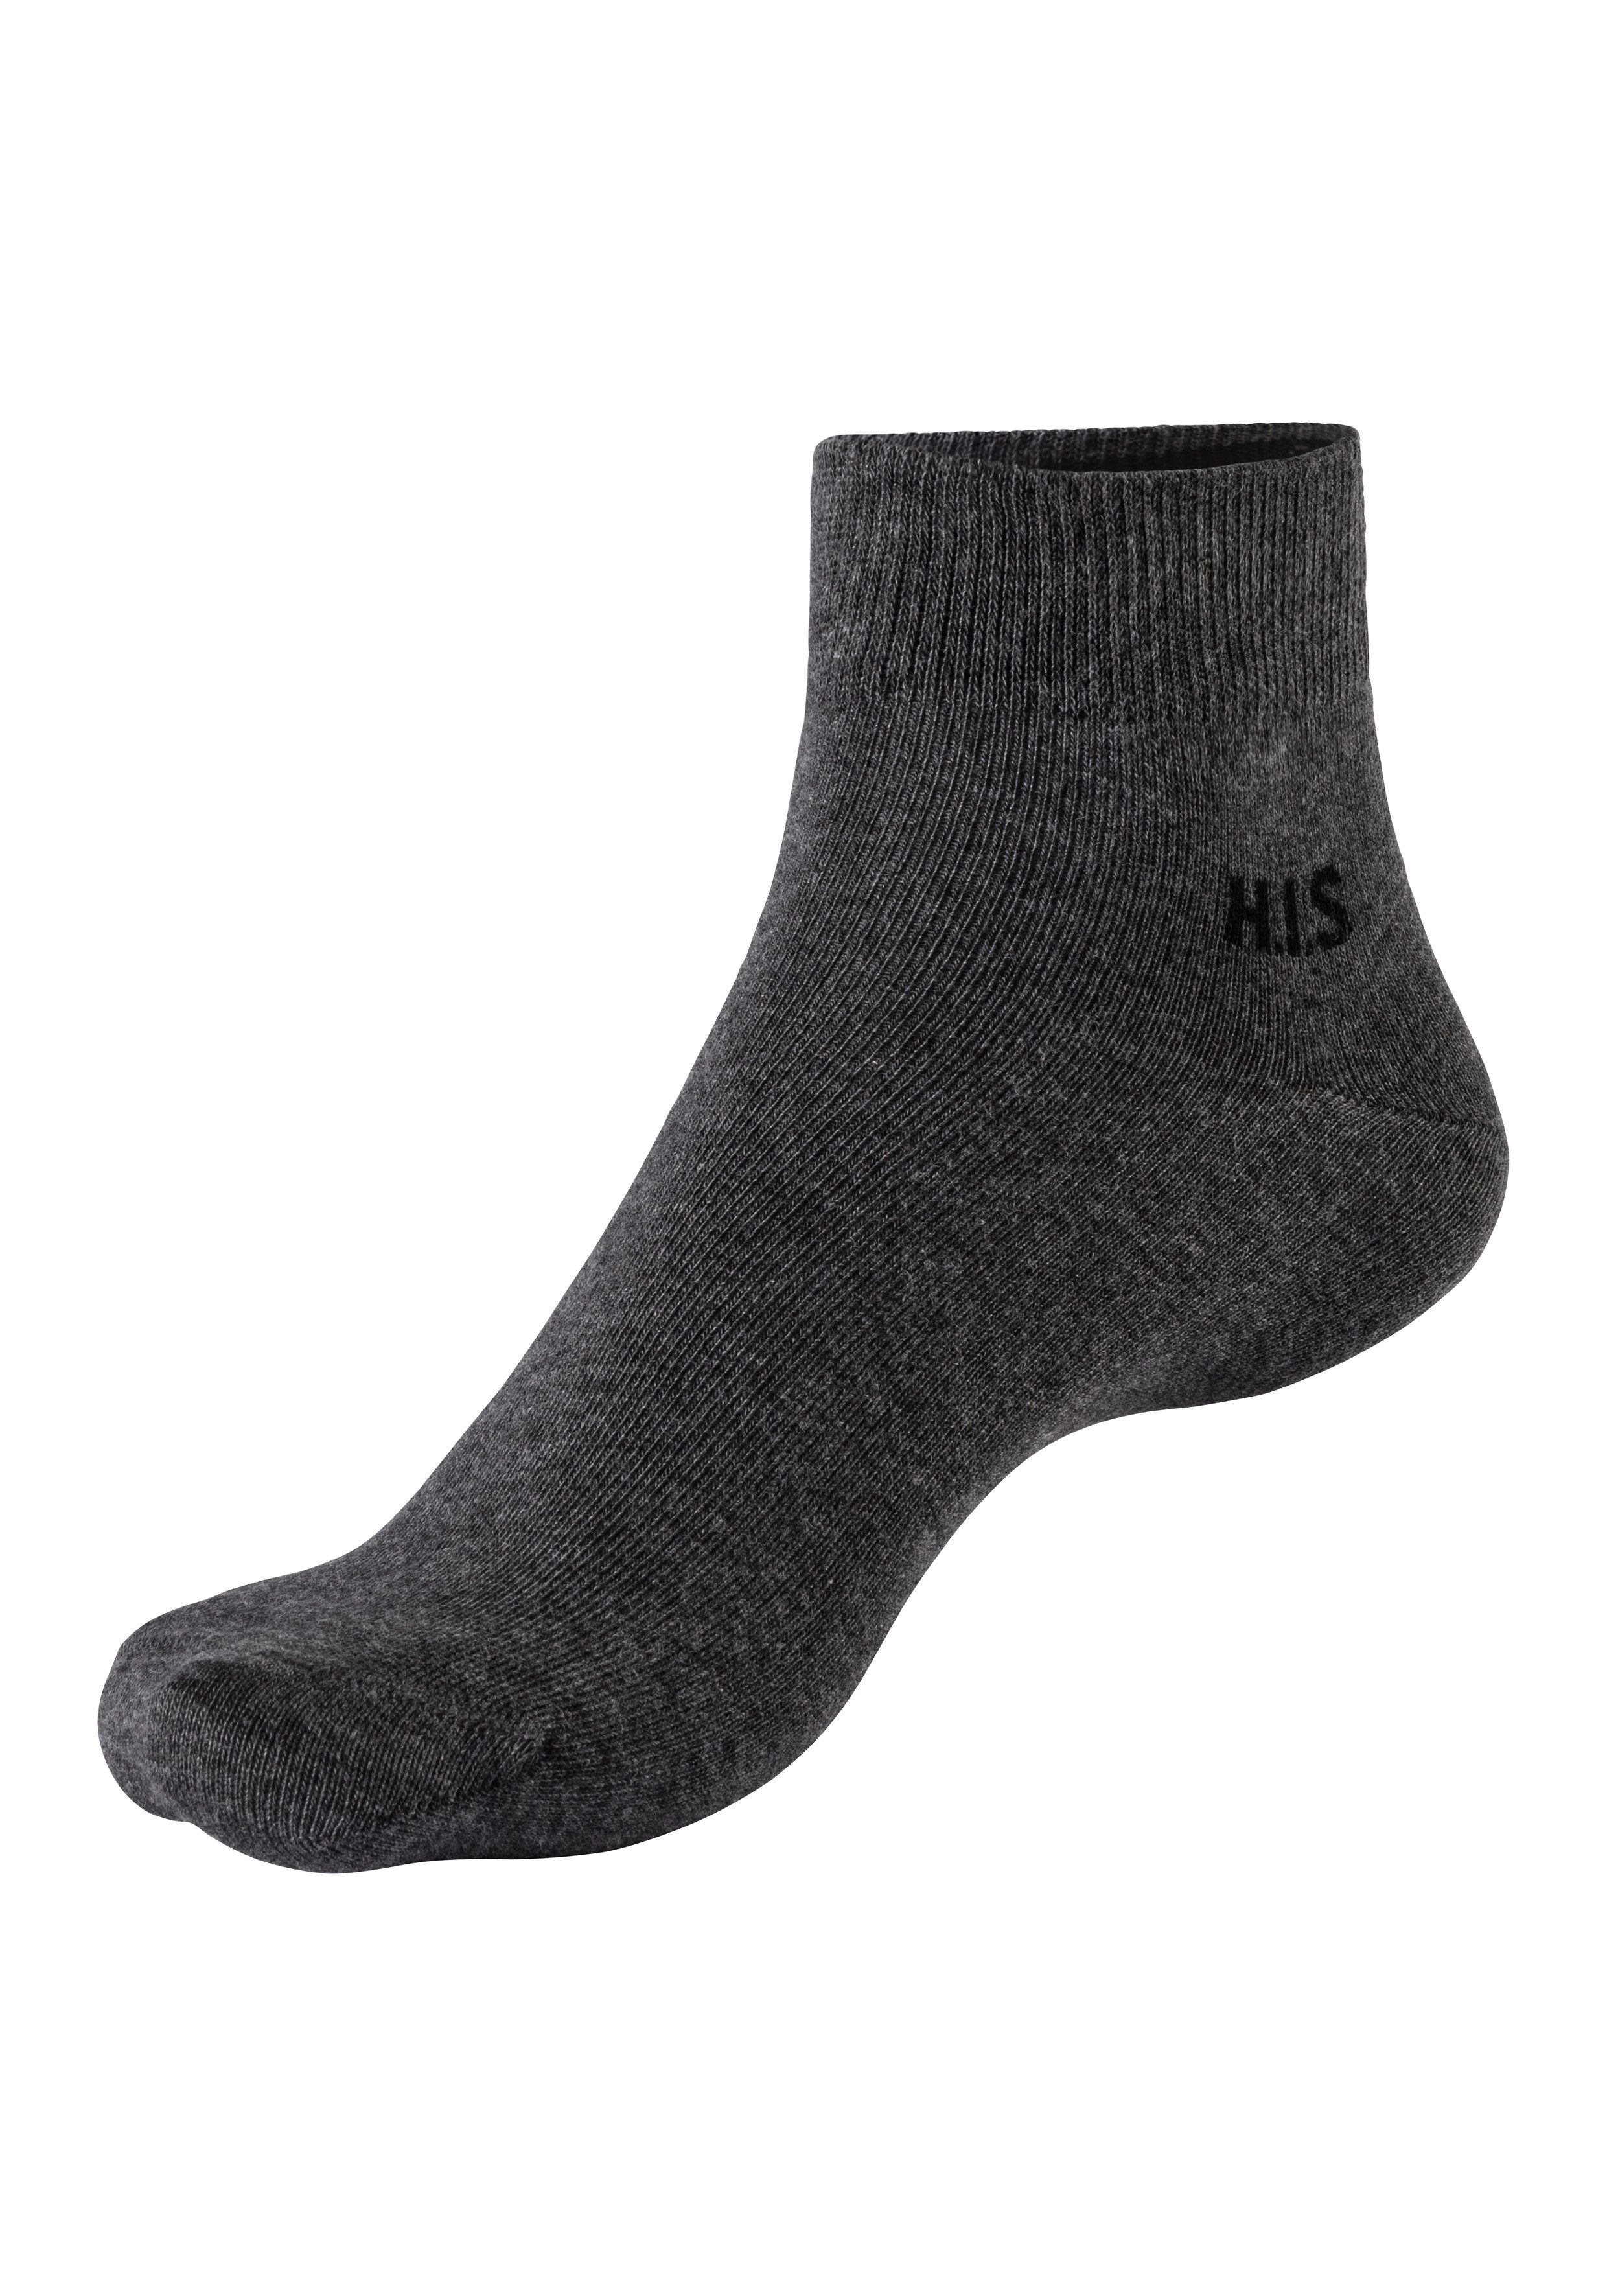 H.I.S Korte sokken met gekleurde binnenkant van de band (set 10 paar)